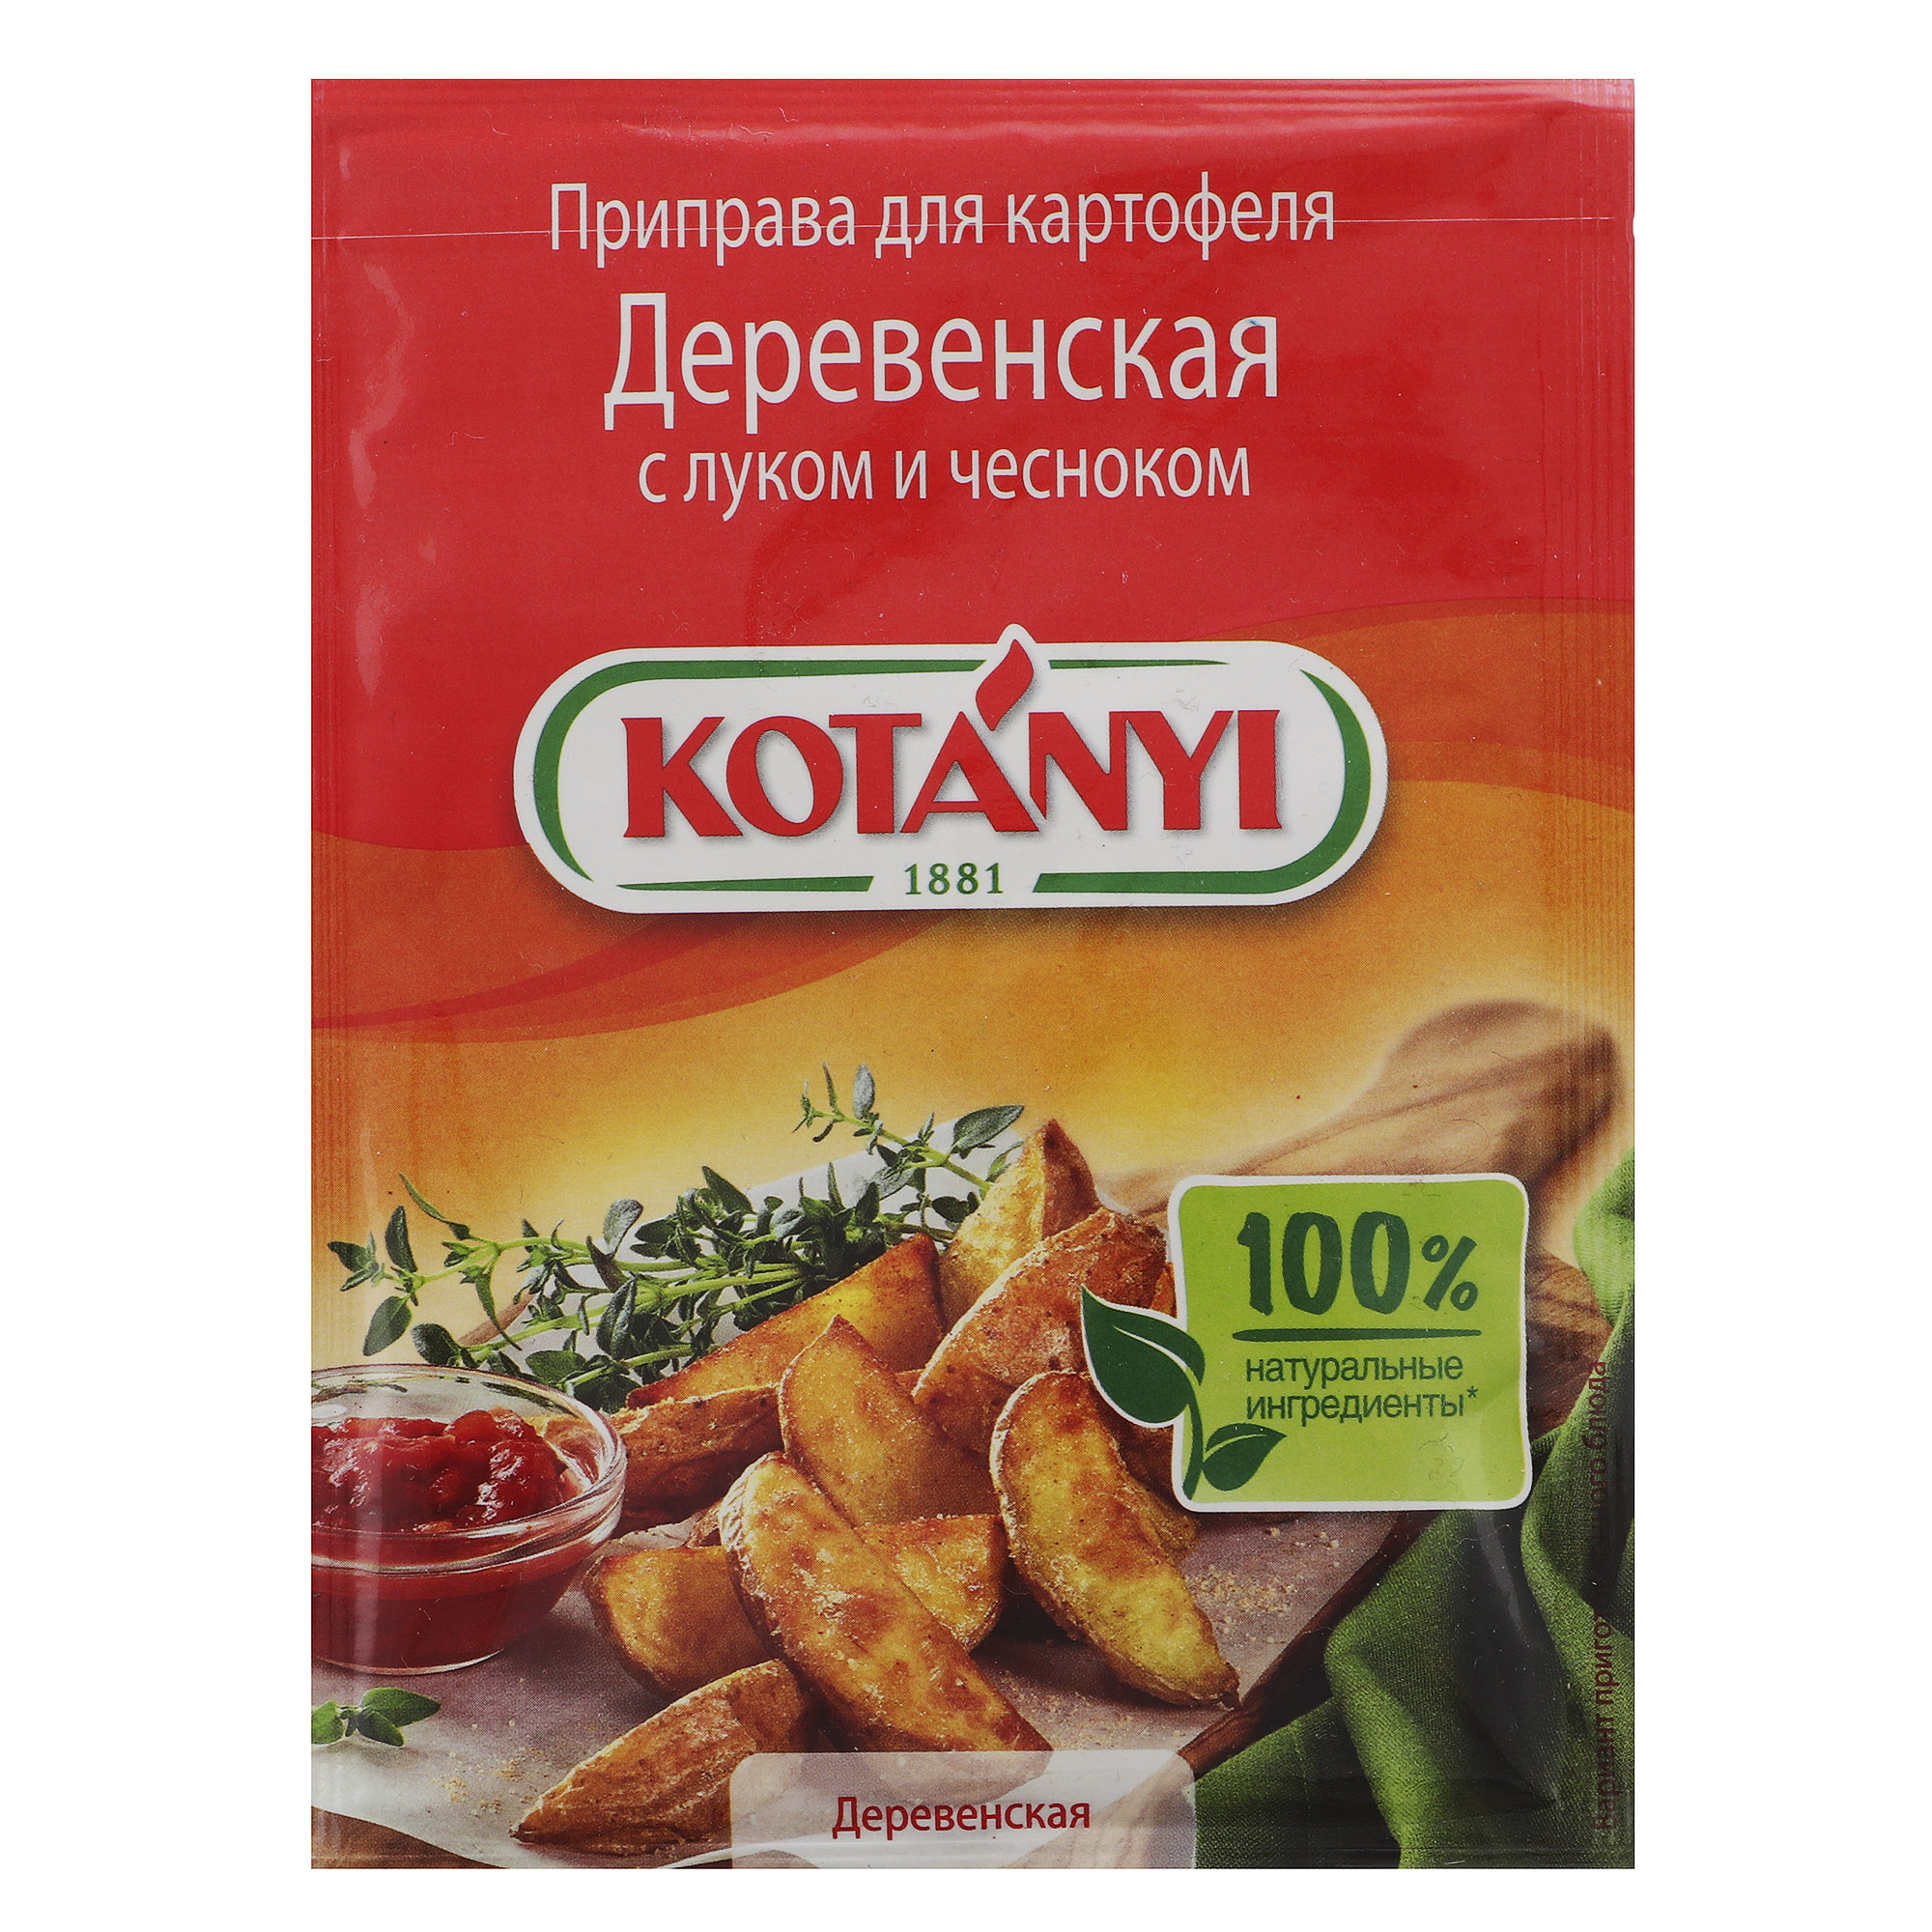 Приправа Kotanyi Деревенская для картофеля с луком и чесноком 20 г приправа kotanyi для салатов 40 г